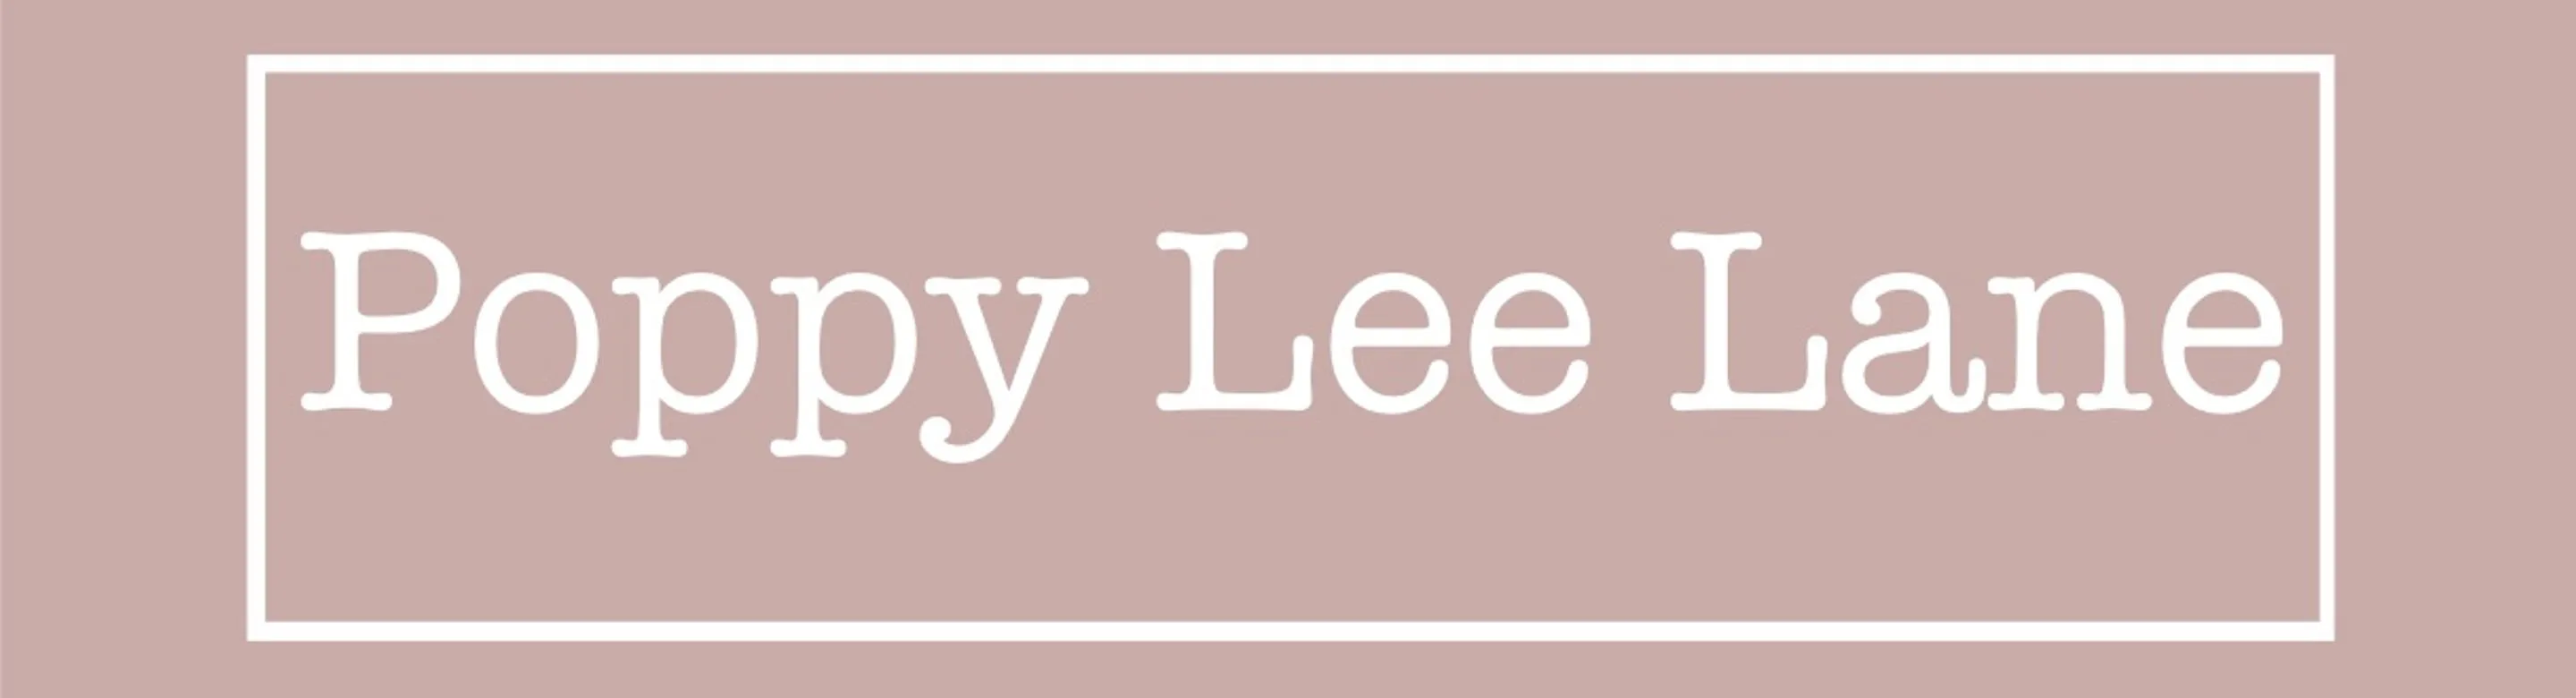 Poppy Lee Lane